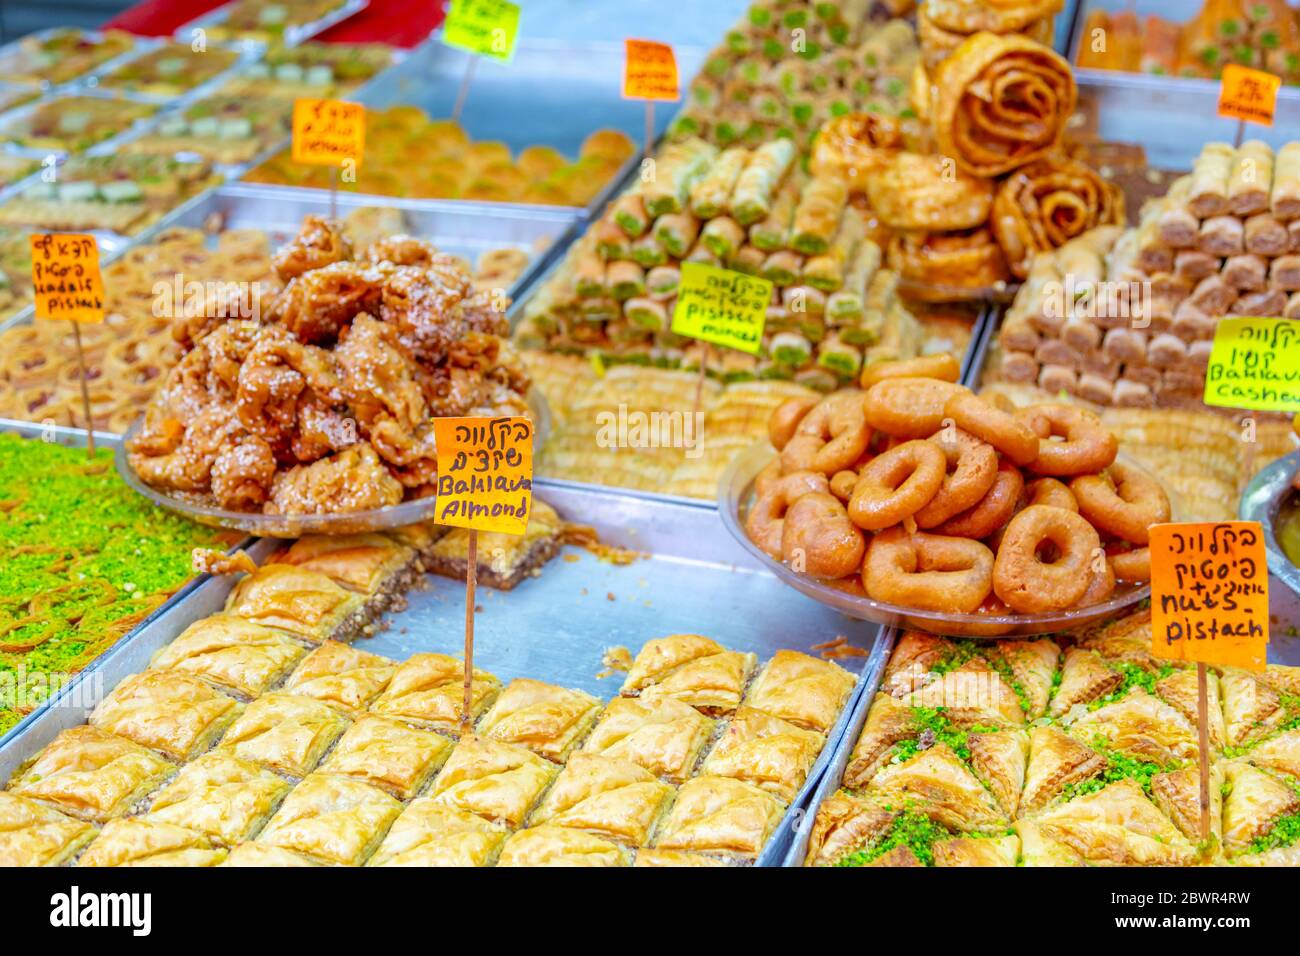 Vue sur les aliments salés dans le marché Hhad veHalak sur Ha Carmel Street, tel Aviv, Israël, Moyen-Orient Banque D'Images